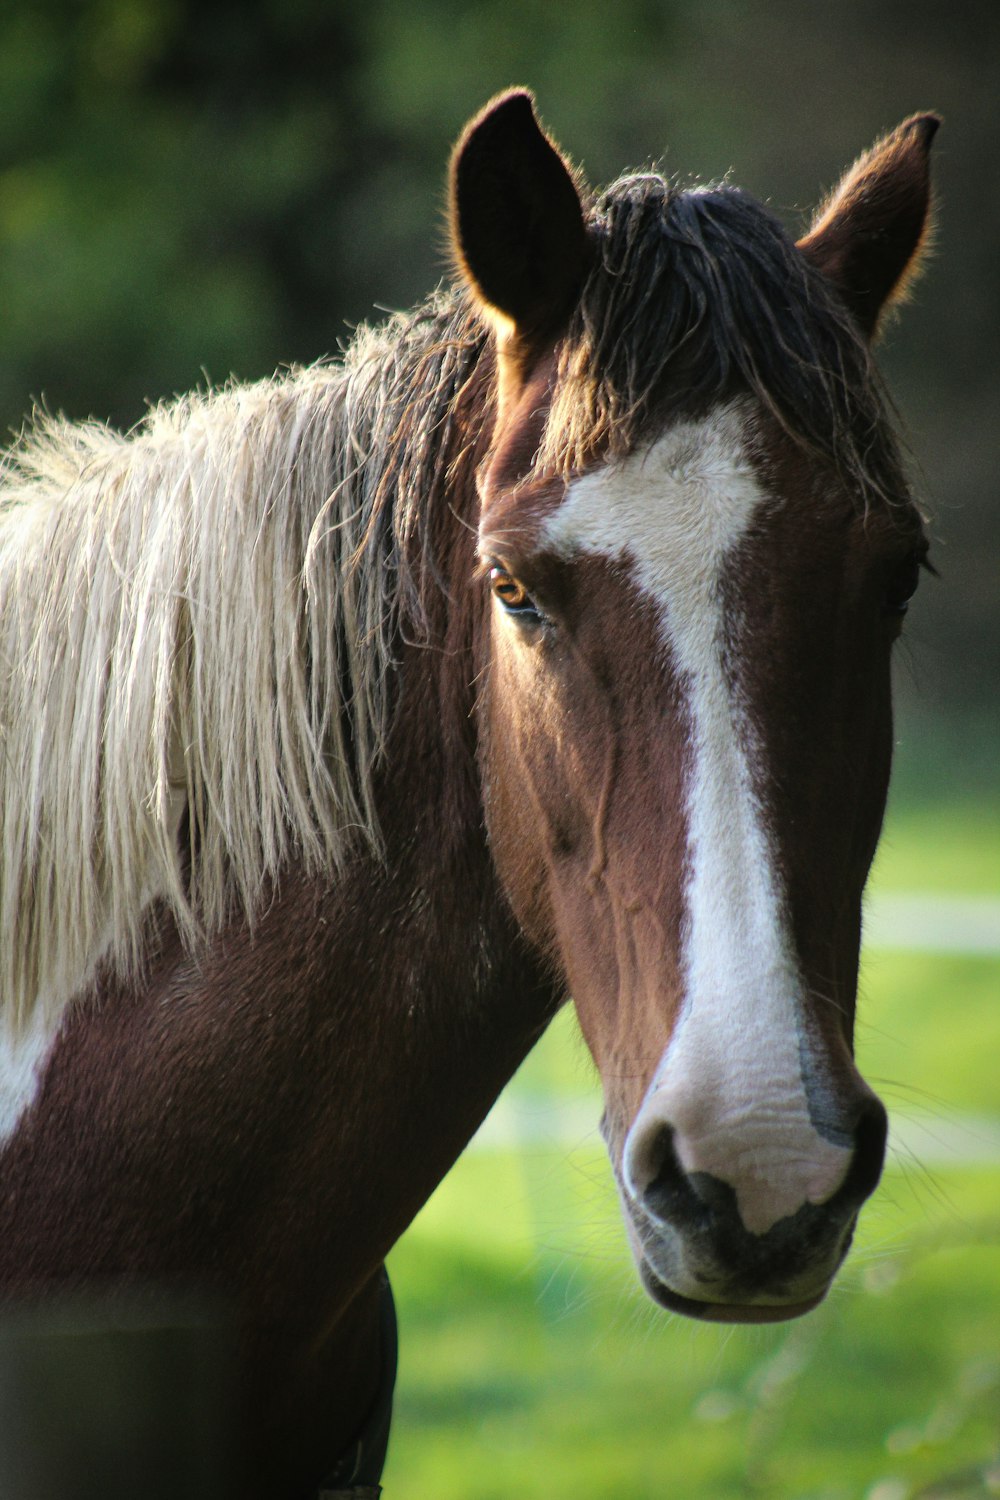 무성한 녹색 들판 위에 서 있는 갈색과 흰색 말